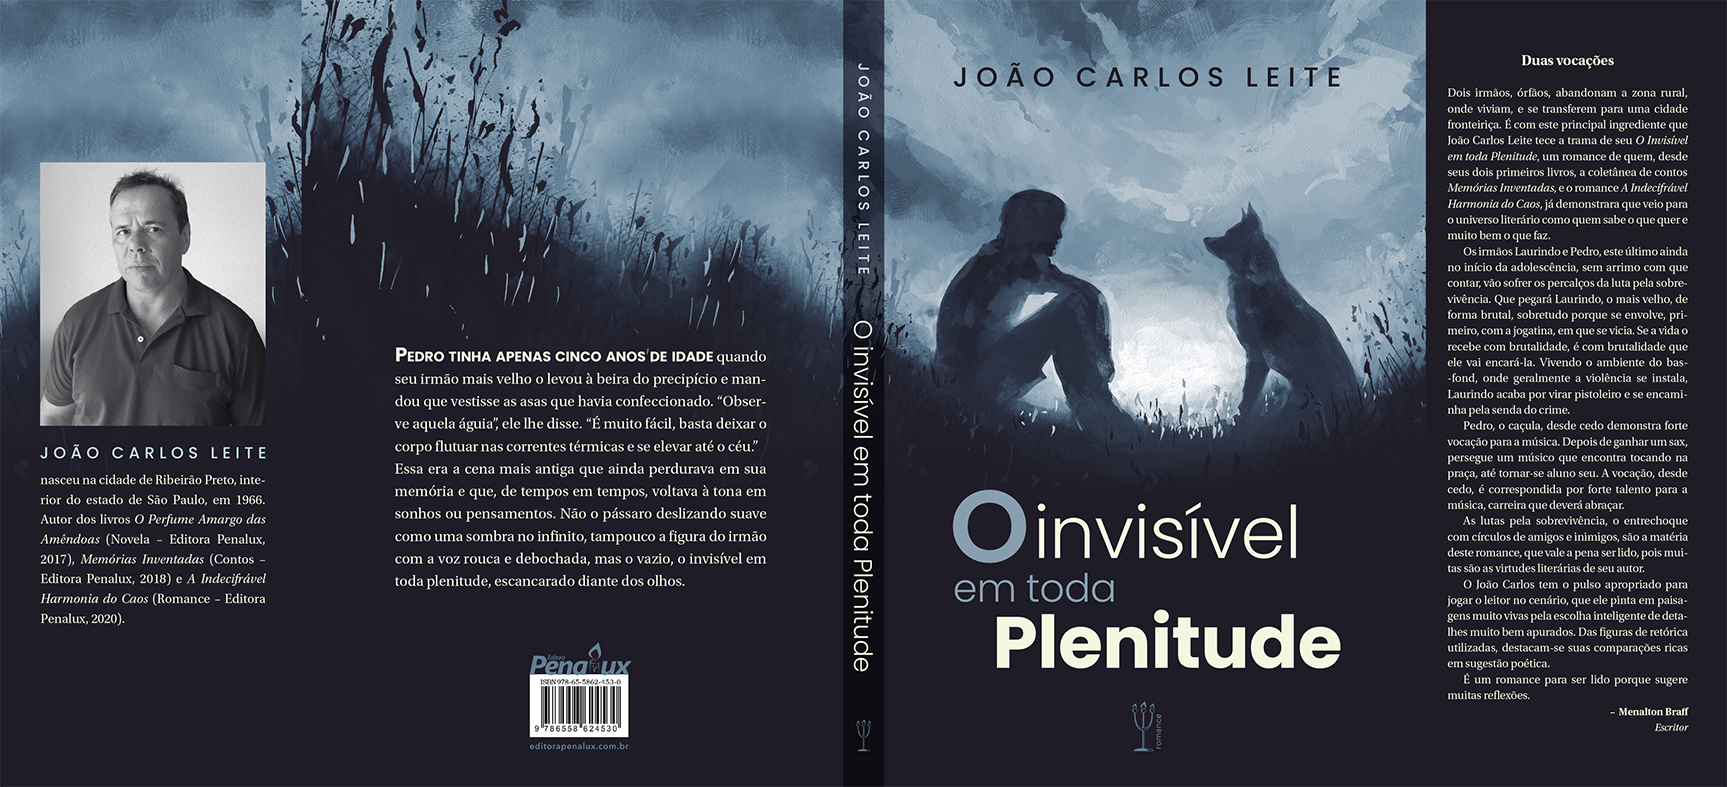 José Carlos Leite - Fernando Andrade entrevista o escritor João Carlos Leite sobre o livro 'O invisível em toda plenitude'